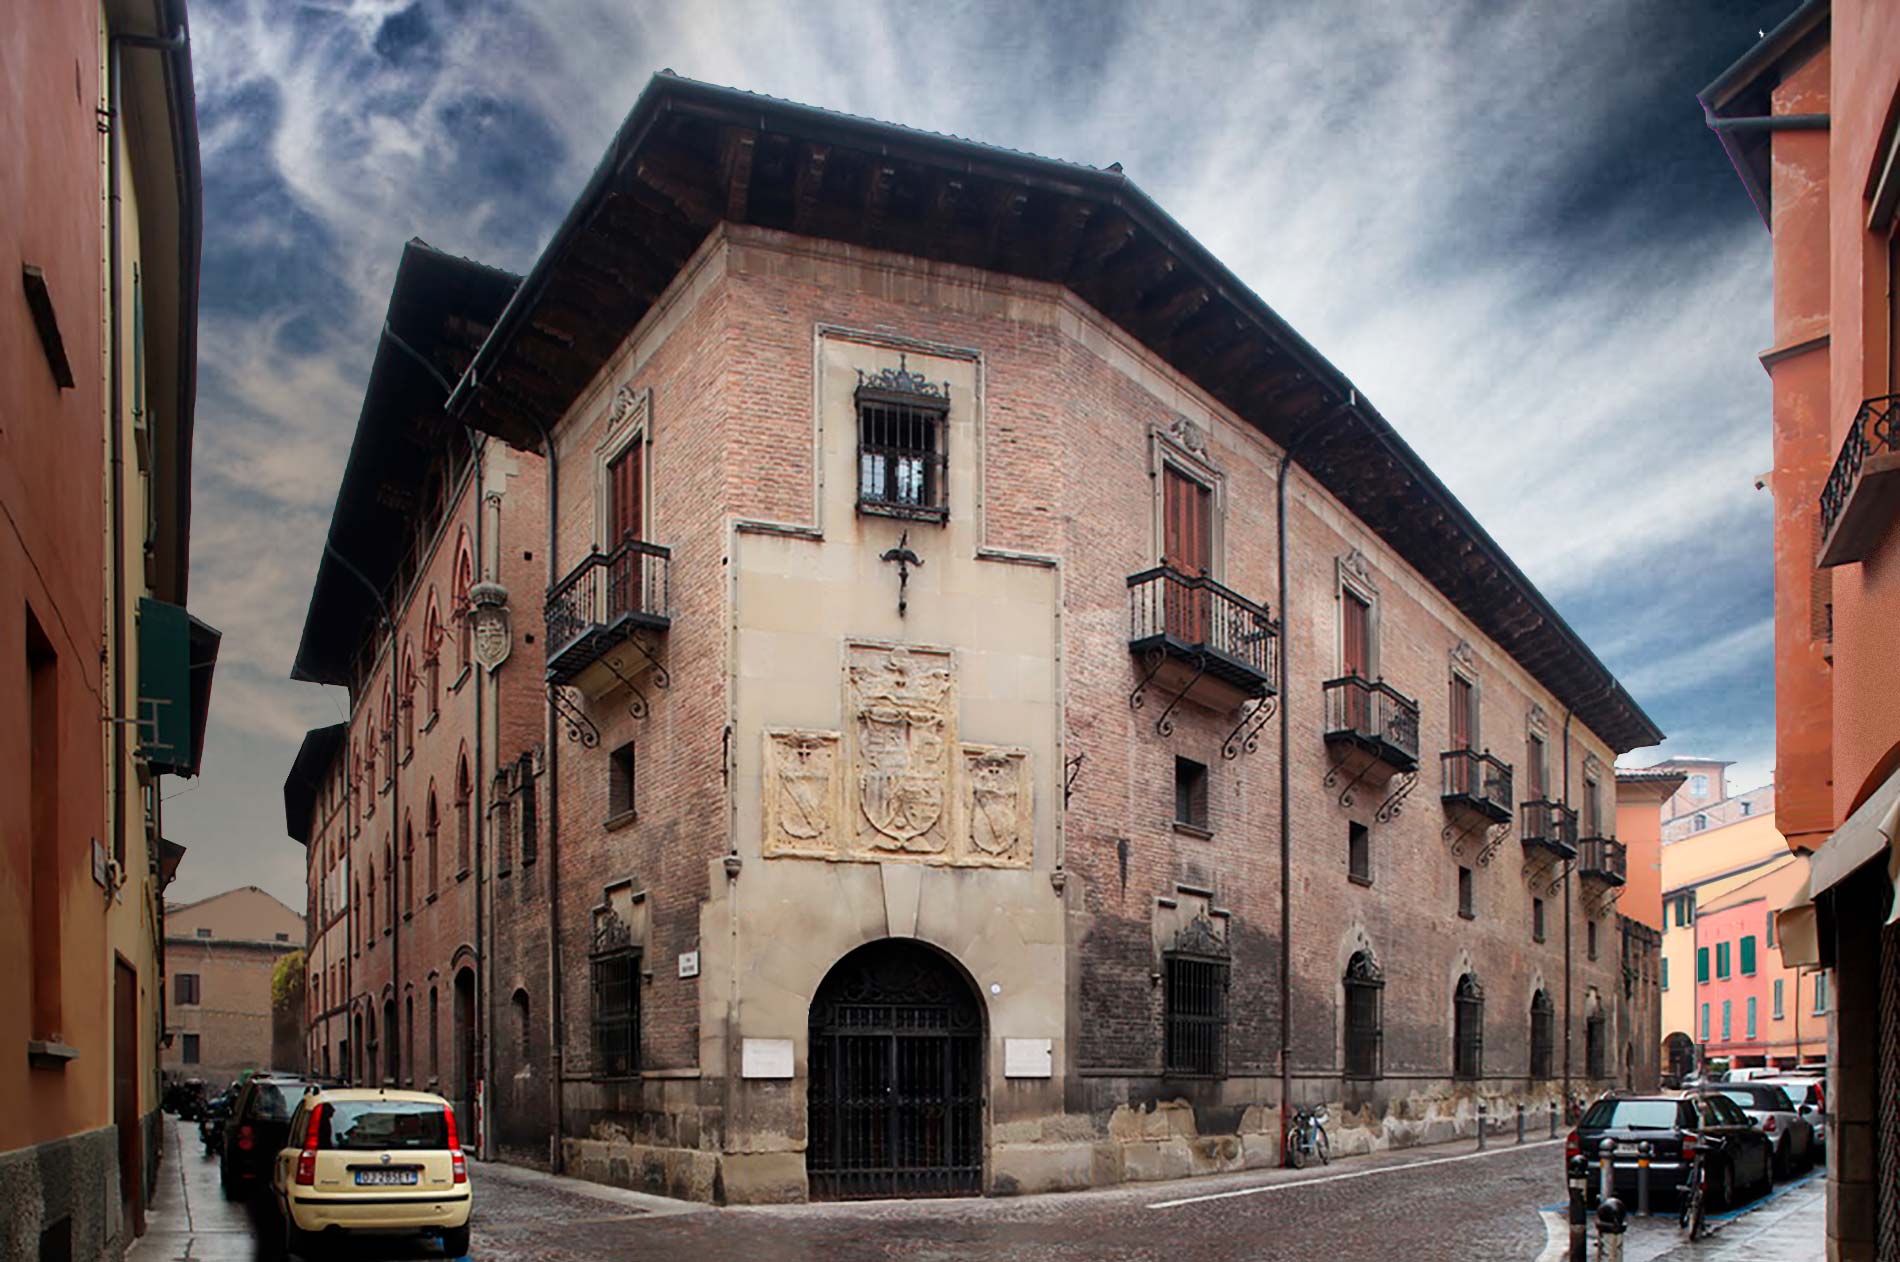 El Supremo tumba el plan del Gobierno para controlar el Colegio de España en Bolonia